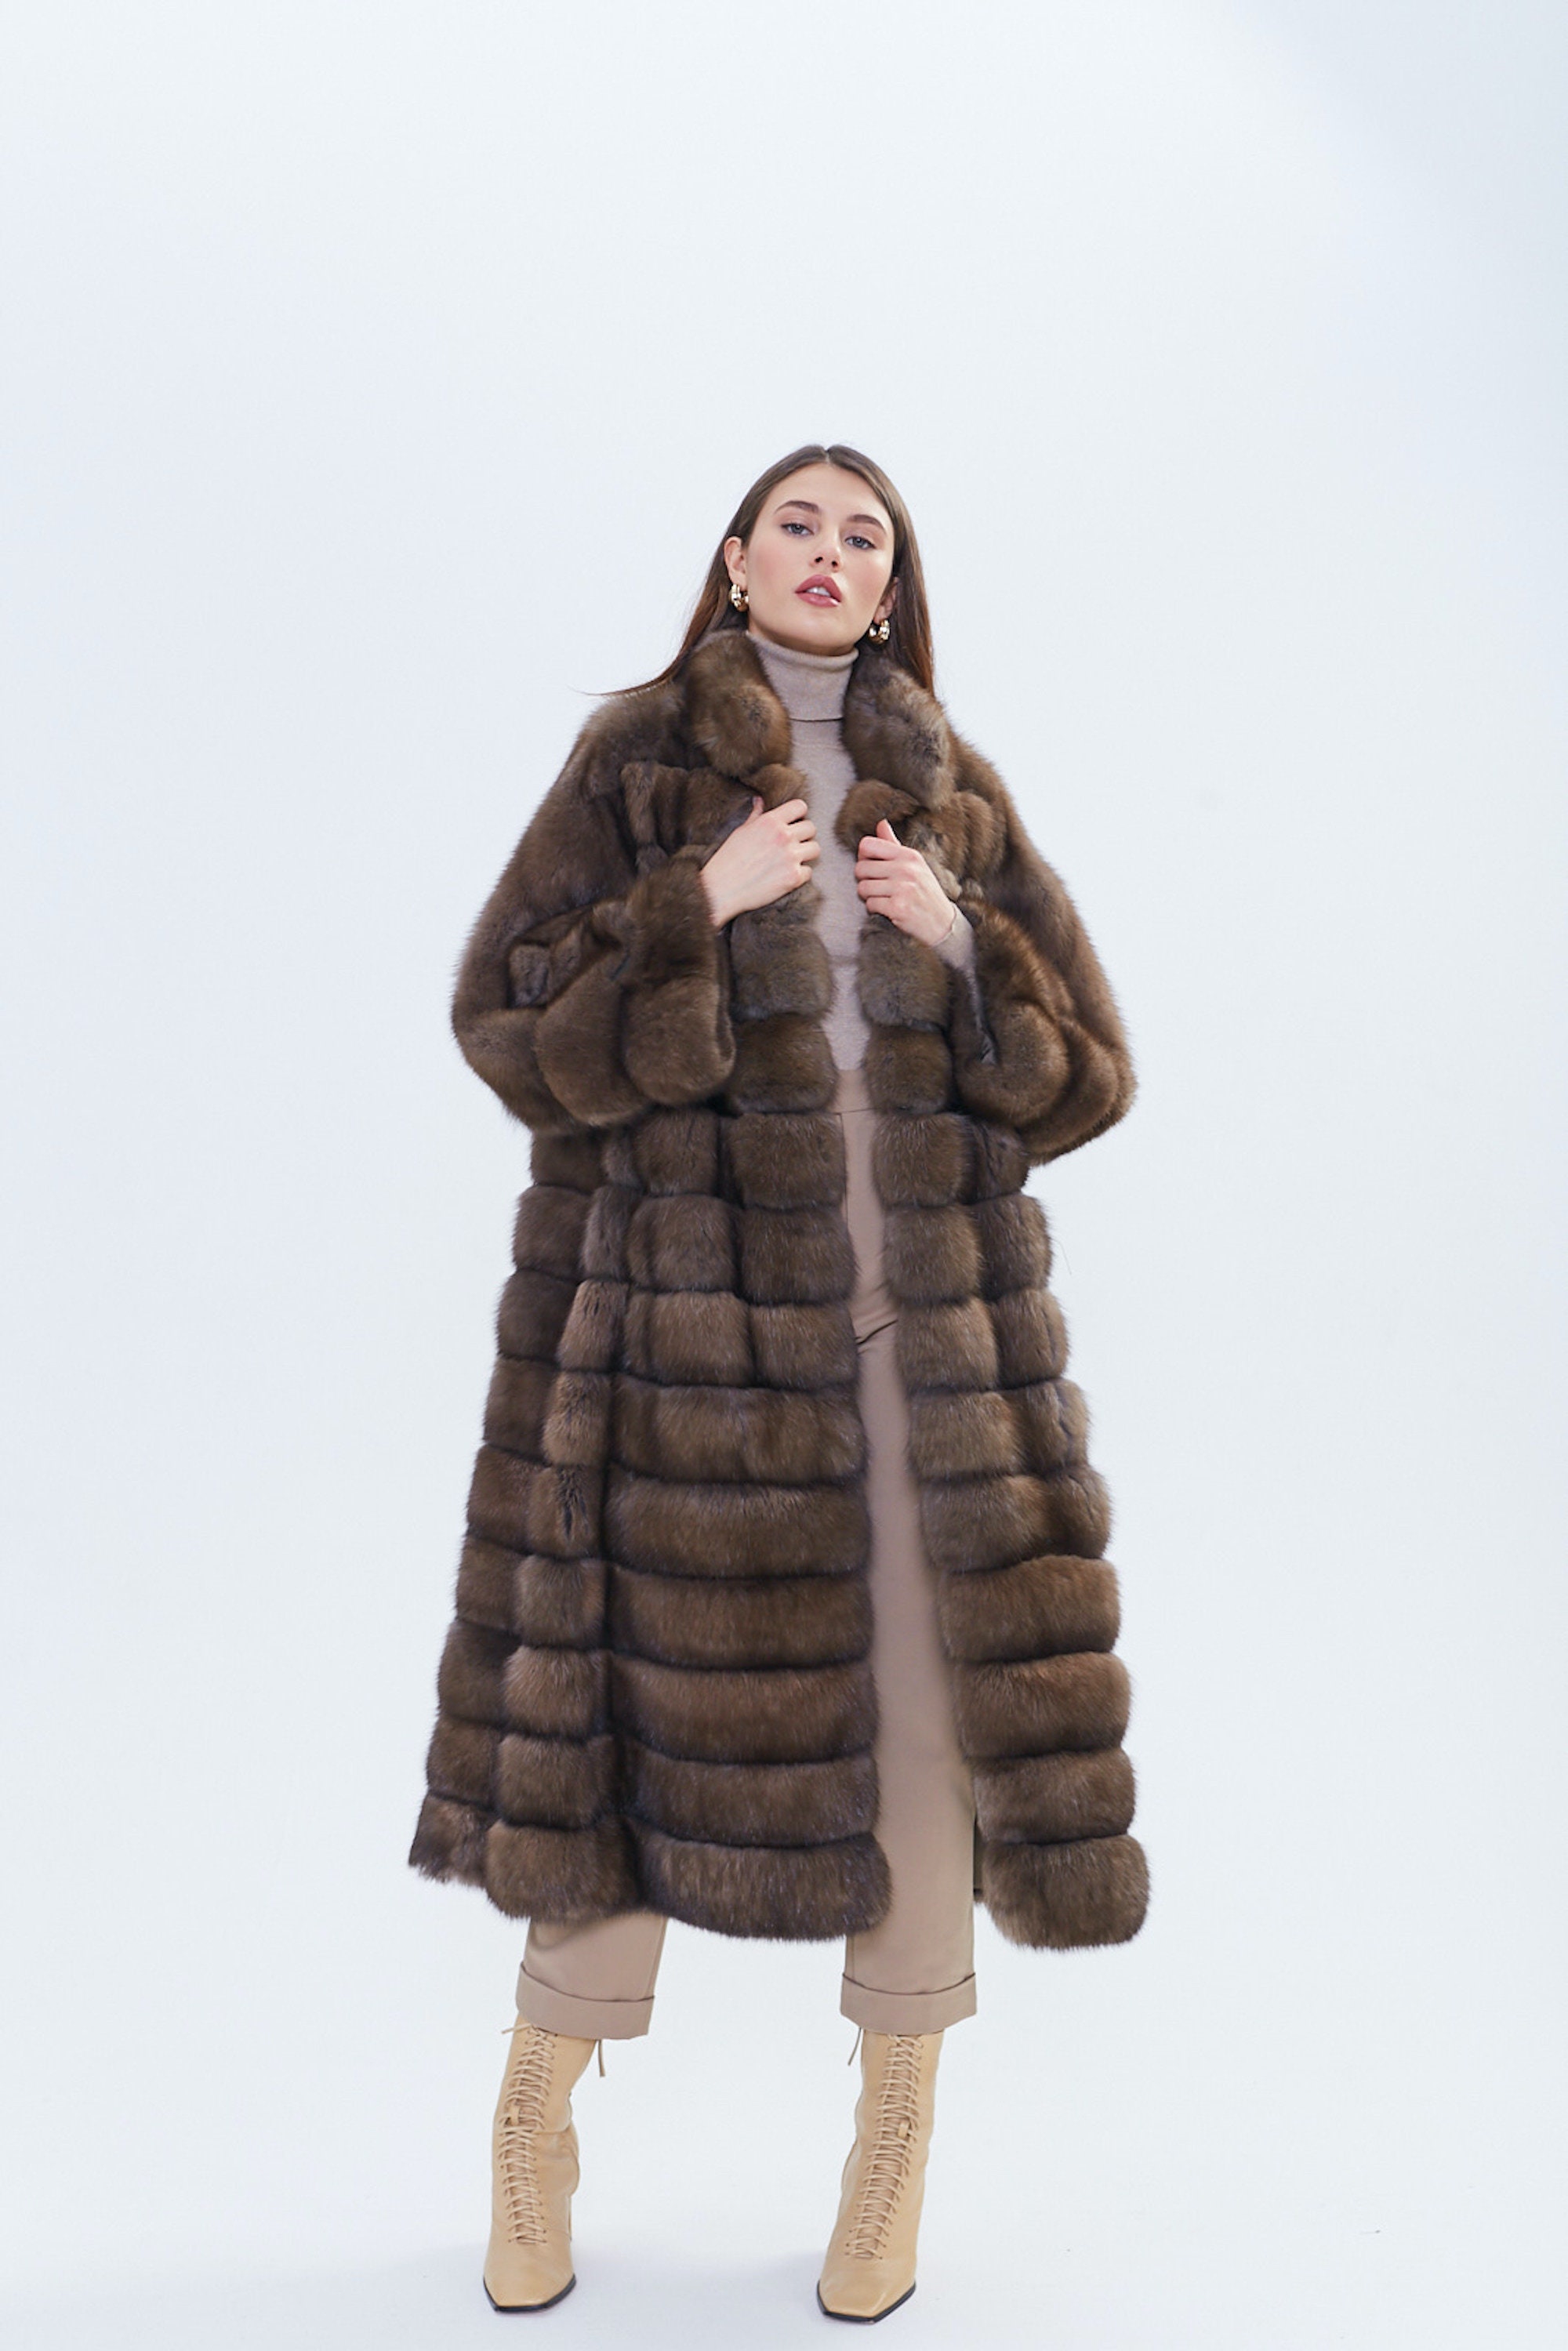 Long fur coat, real Russian sable fur